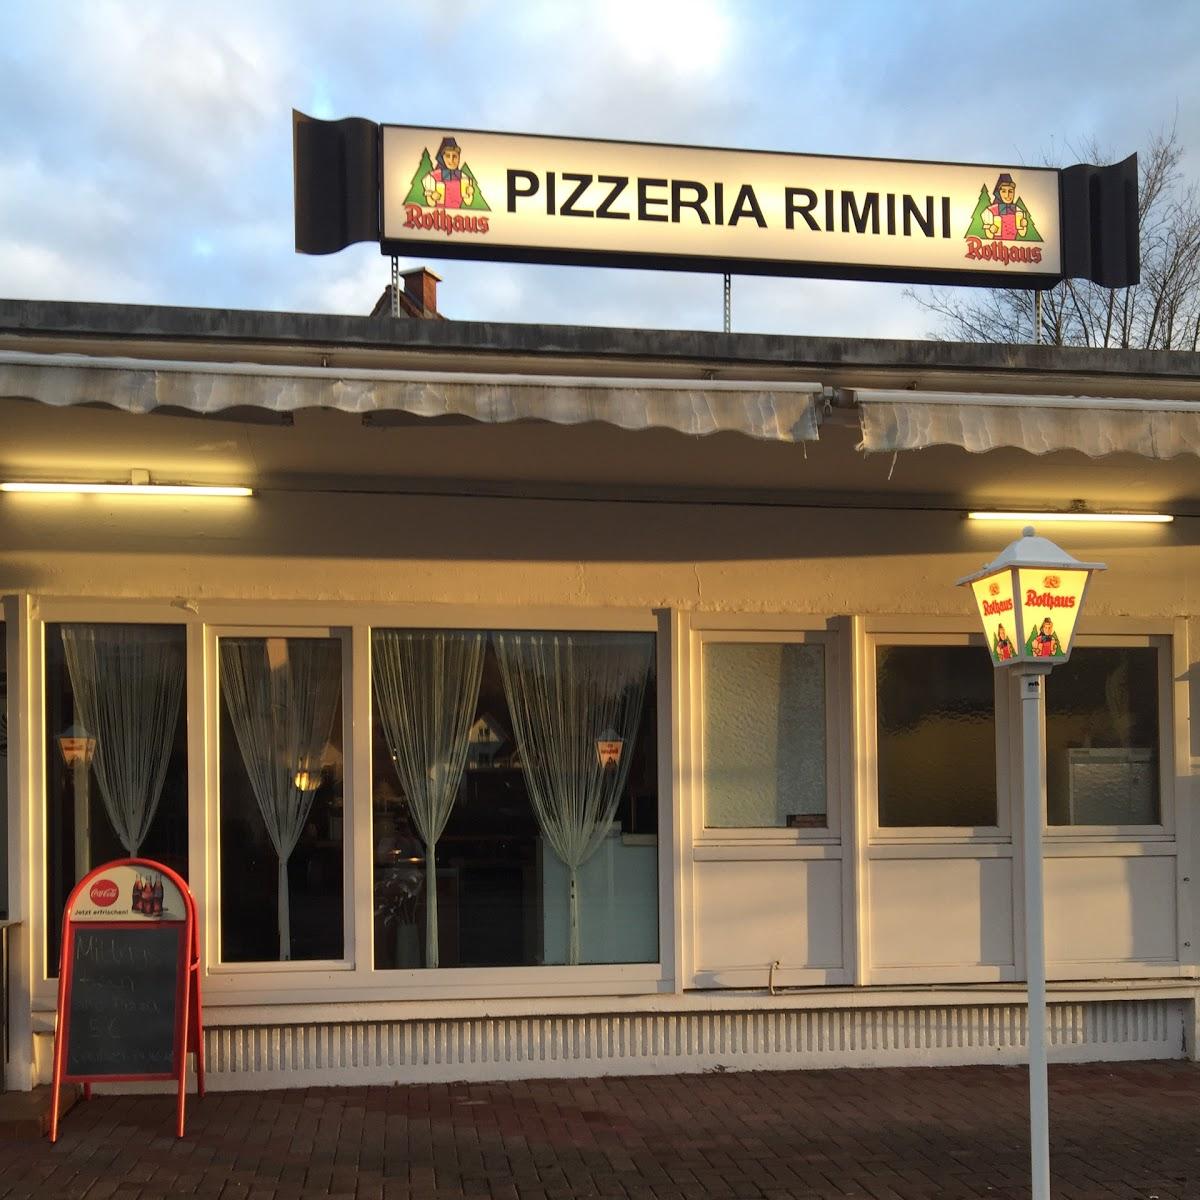 Restaurant "Pizzeria Rimini" in  Maulburg